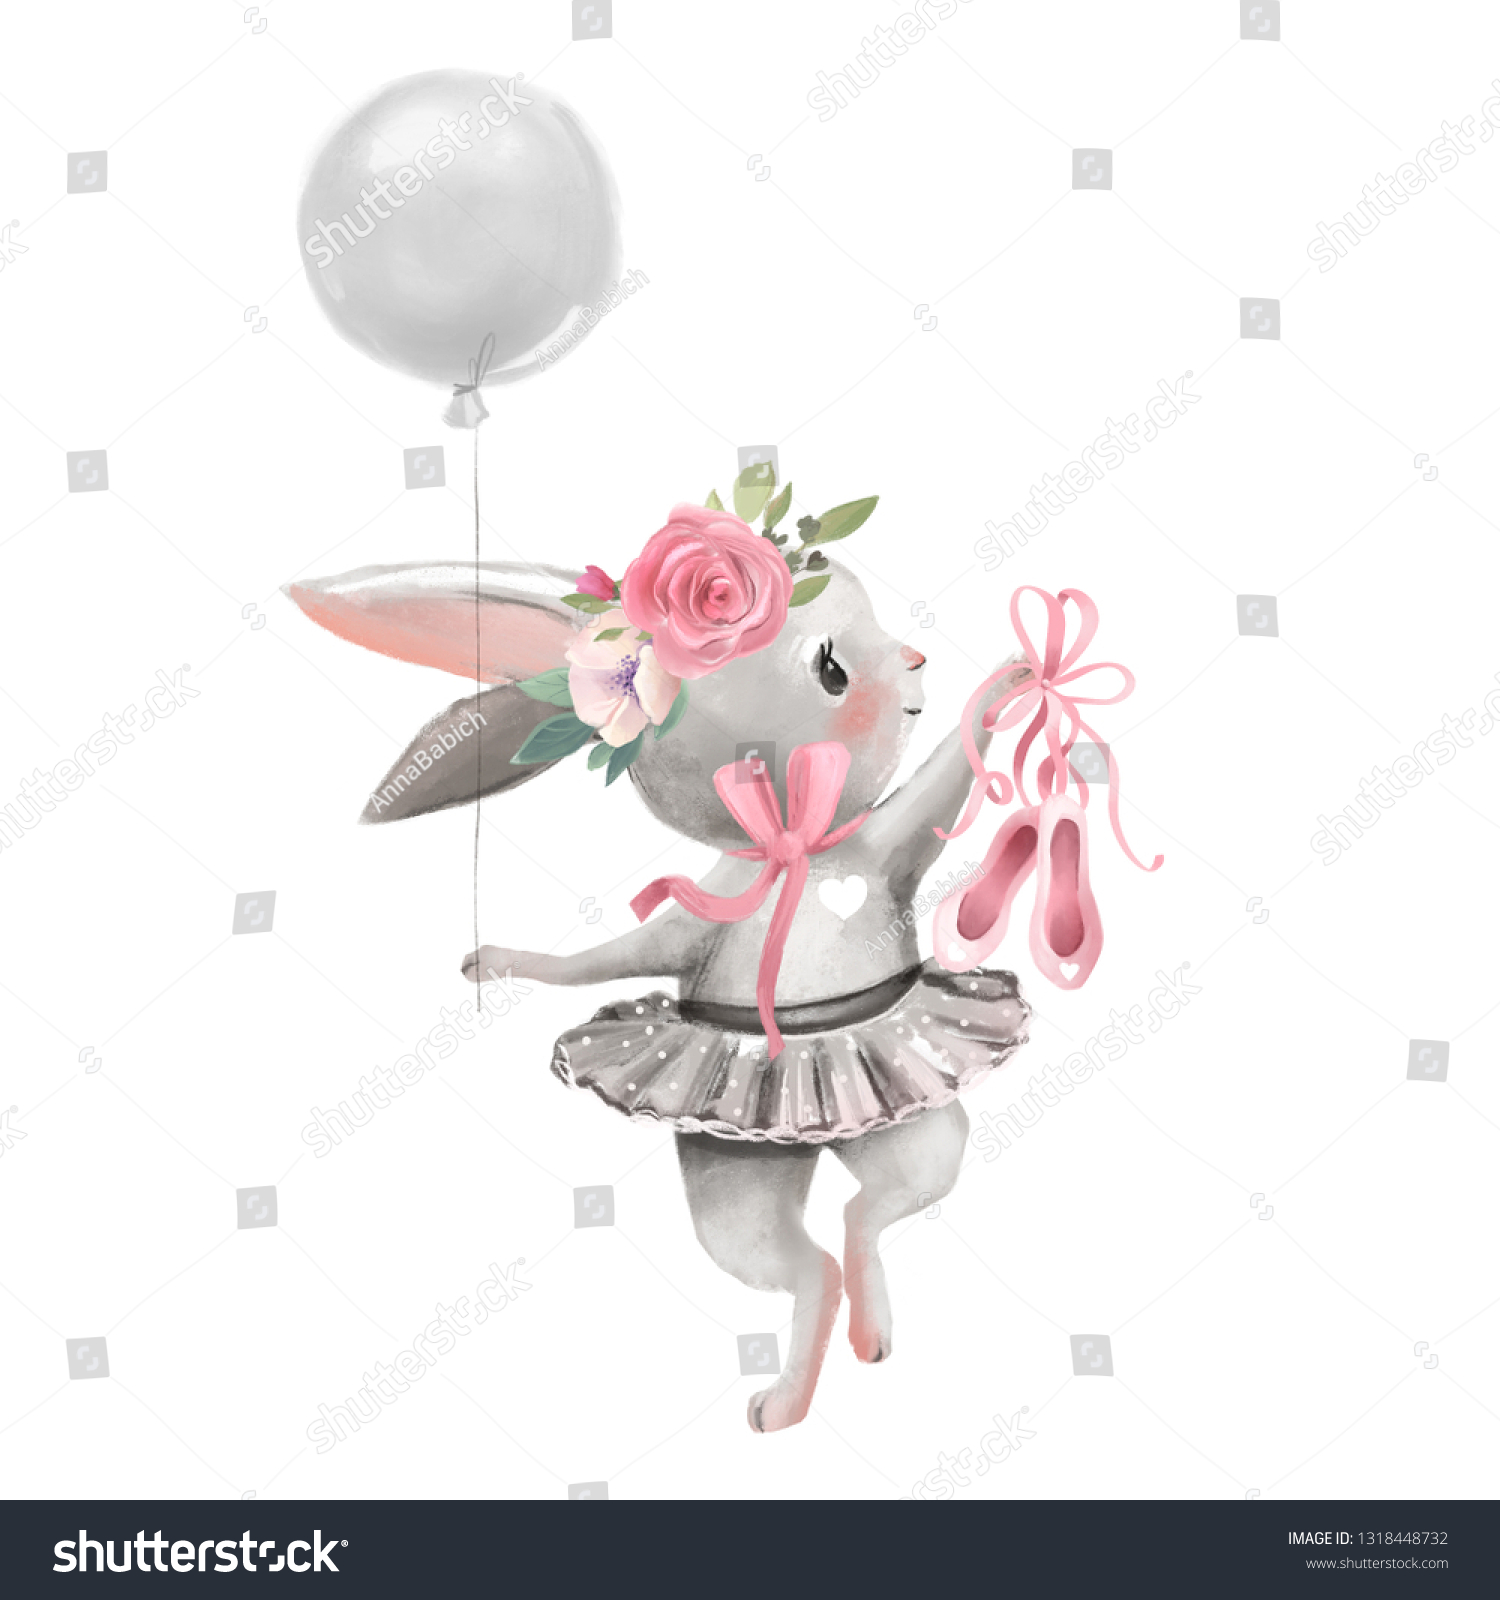 かわいいバレリーナ 花を持つバレエ少女の赤ちゃんバニー 風船と靴を持つバレエドレスの花輪 のイラスト素材